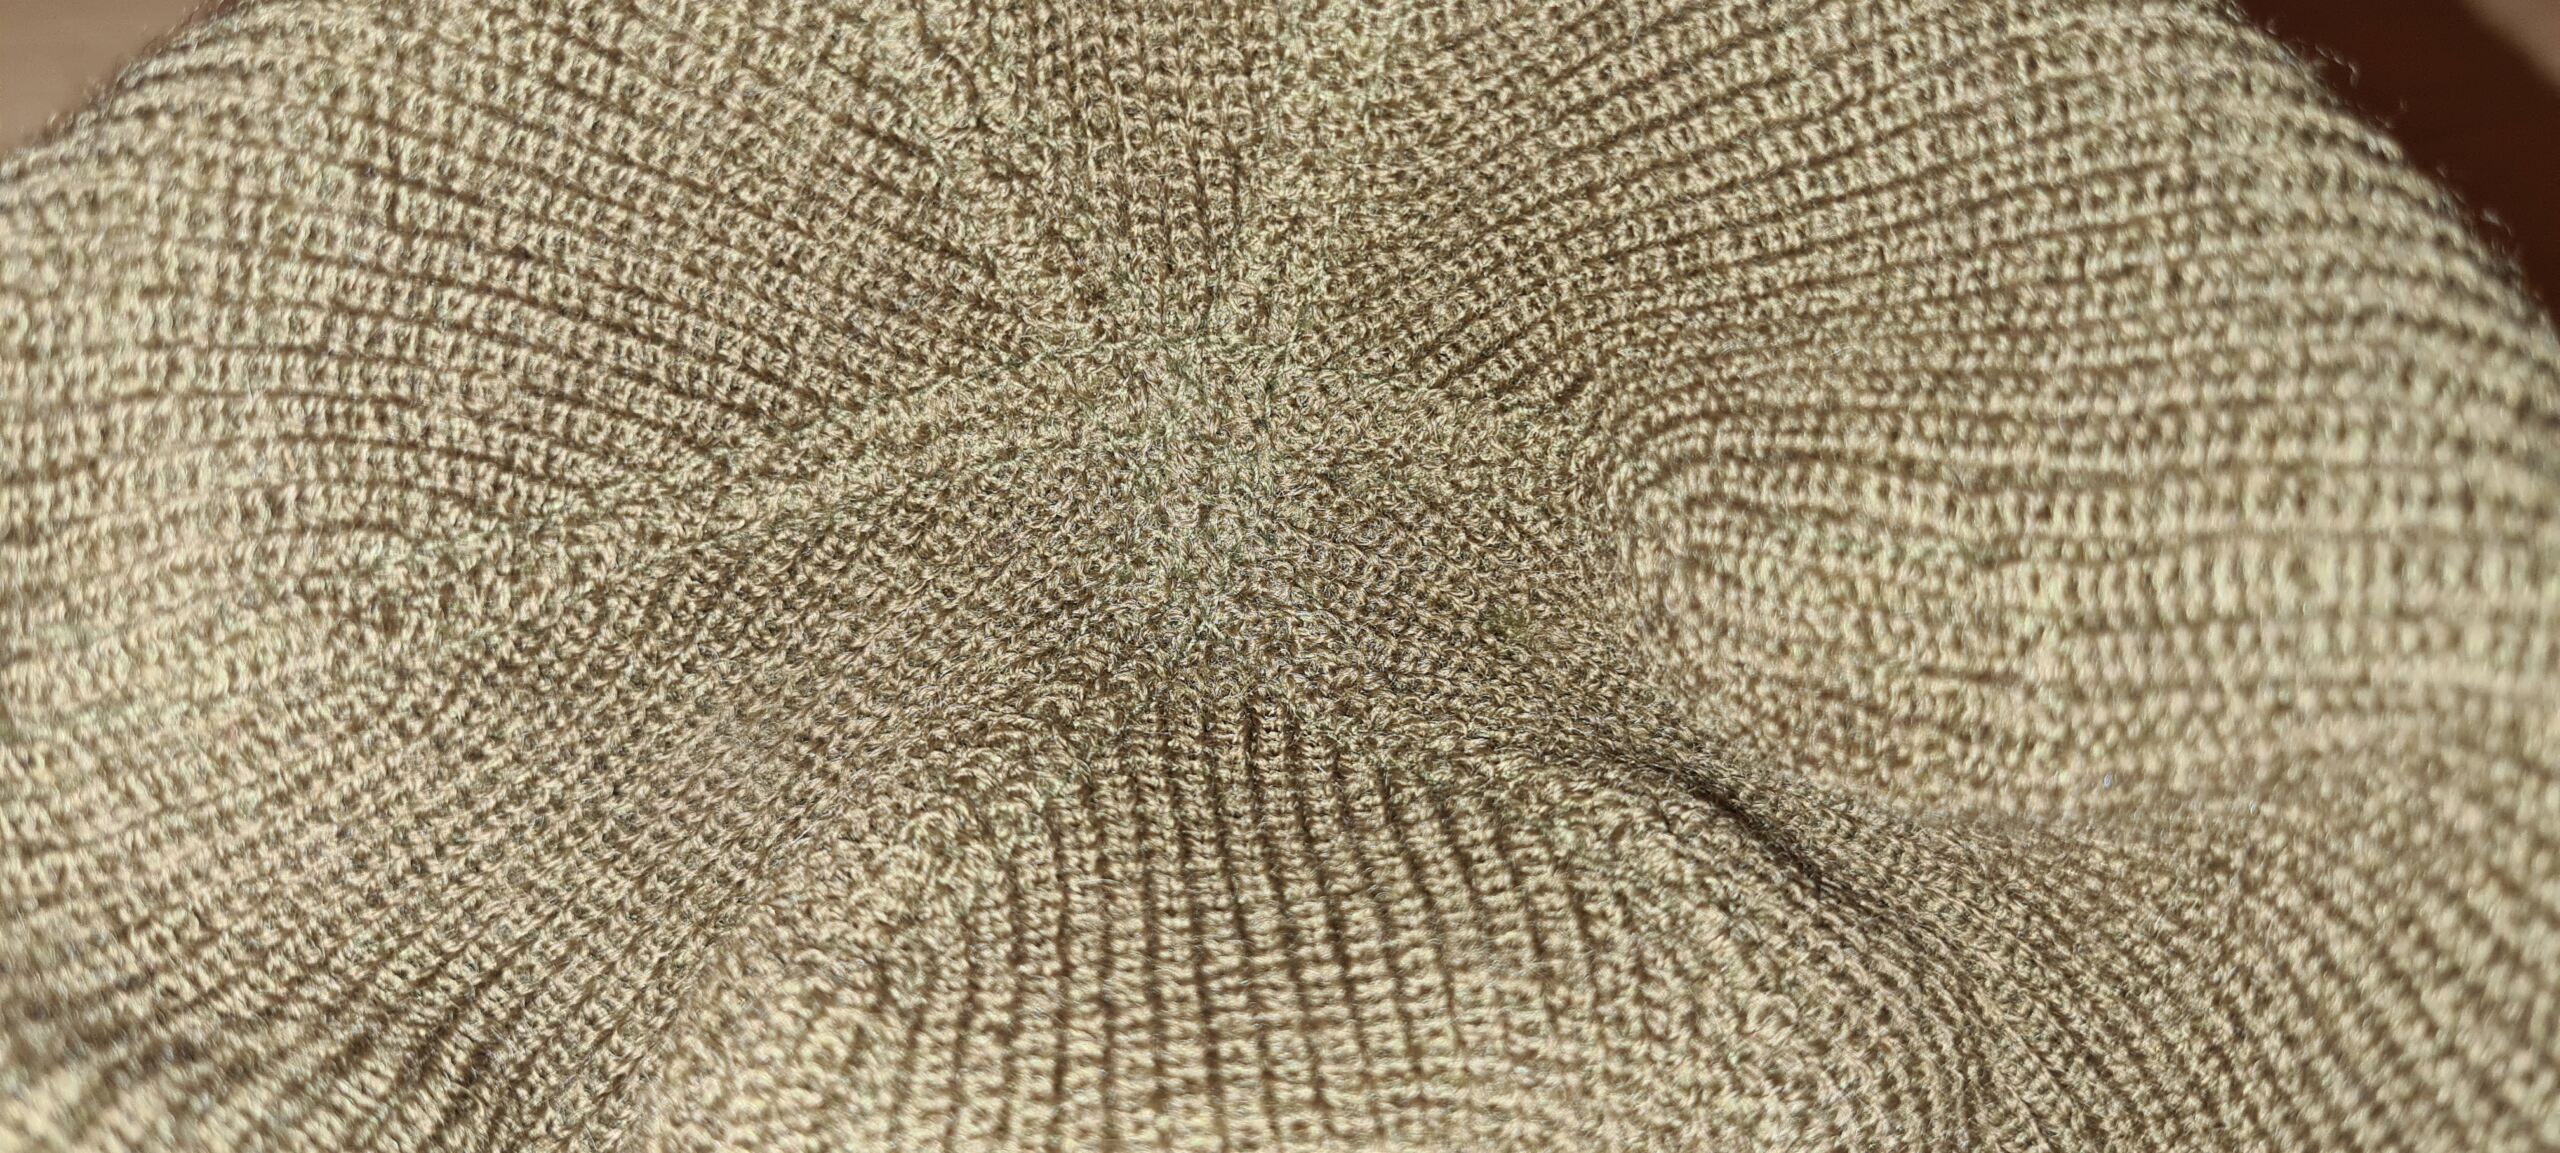 bonnet de laine US winter A- 4 20220712